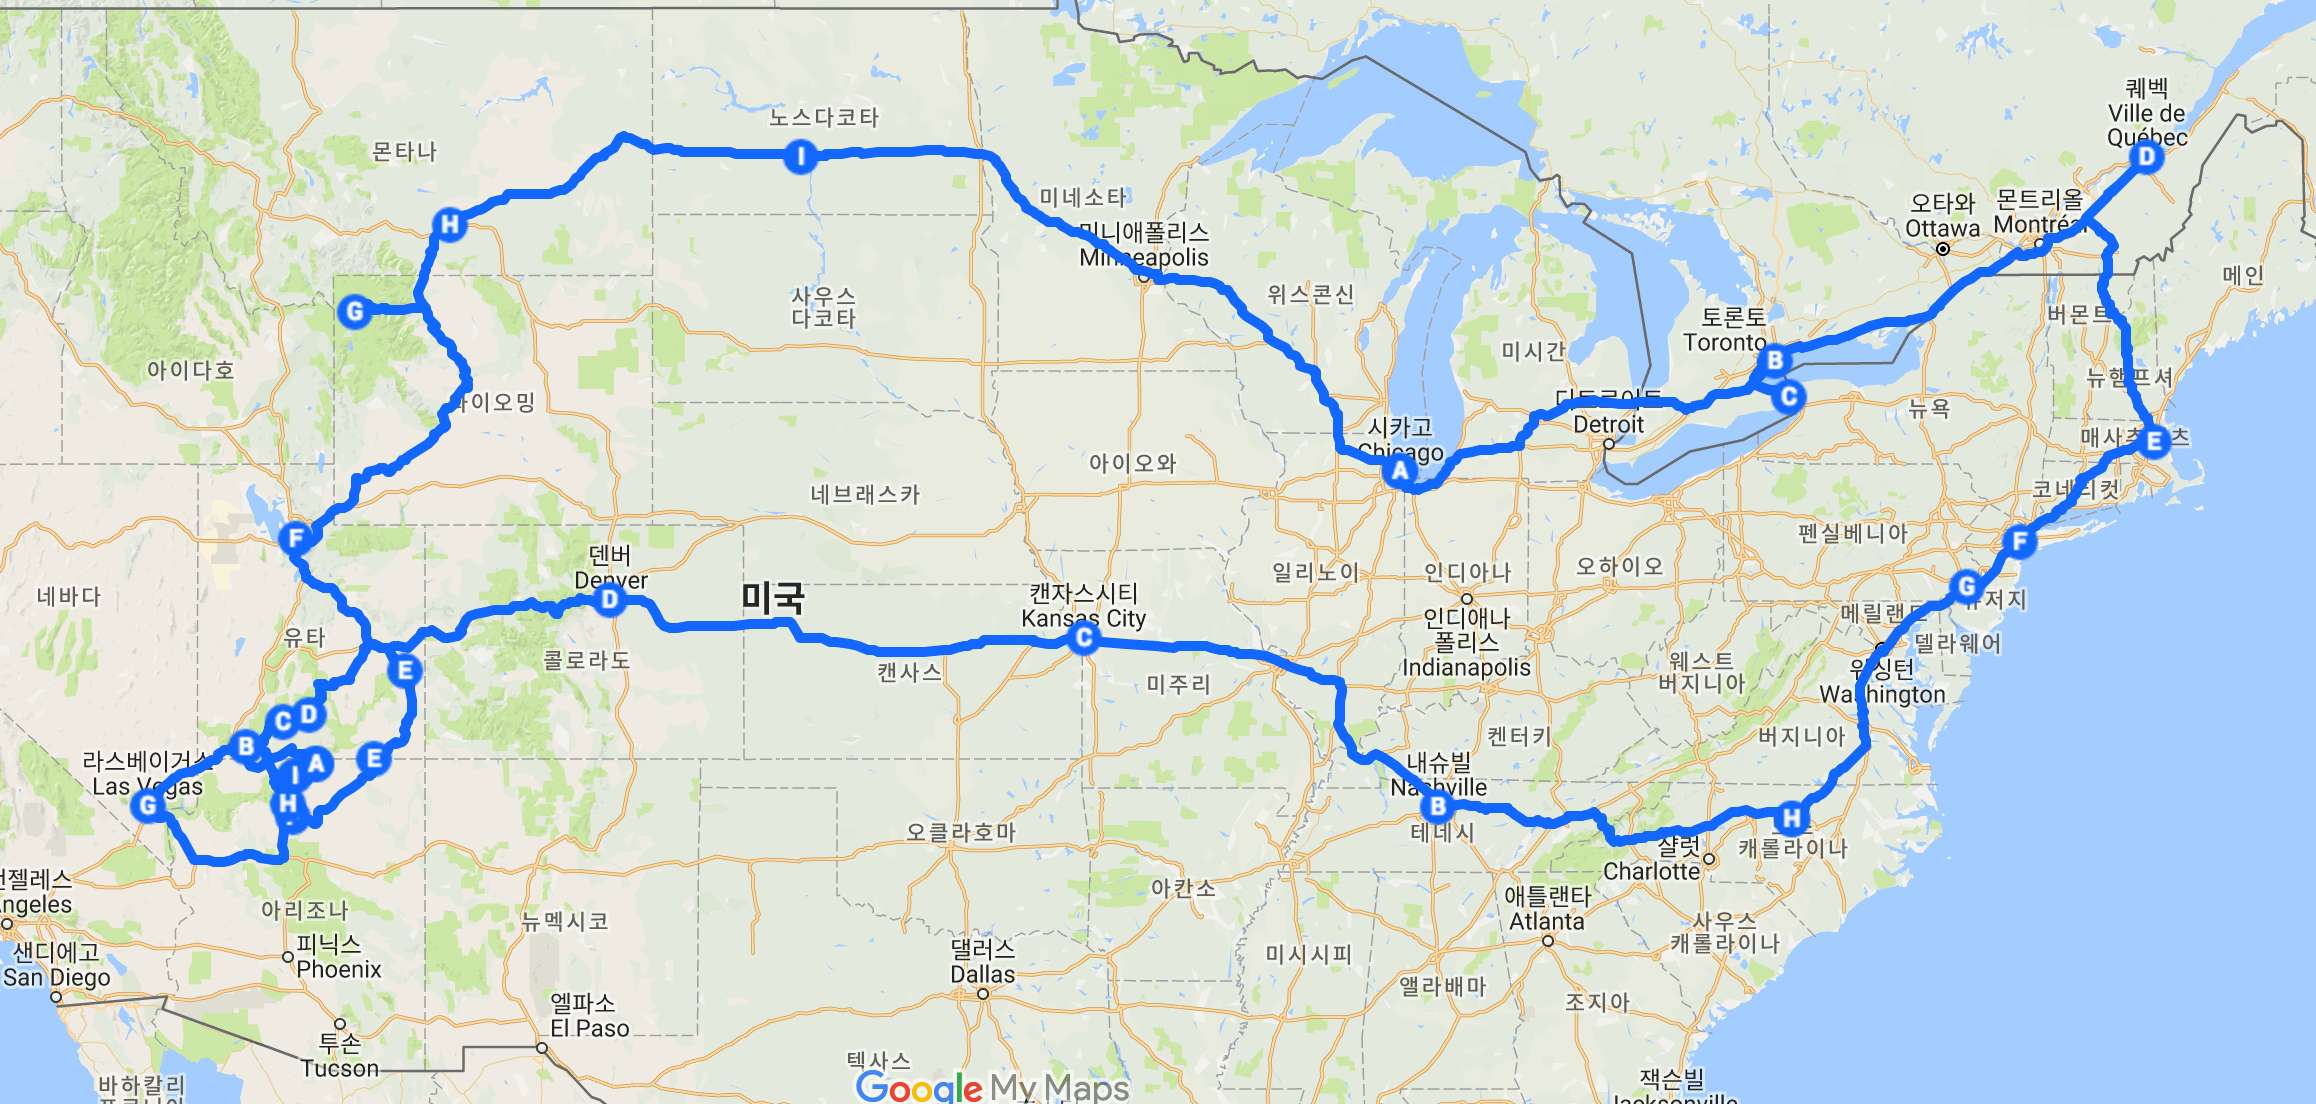 미국여행 - 37일간의 서부 및 동부 자동차여행 일정(6월~7월) 도움의견 부탁드려요